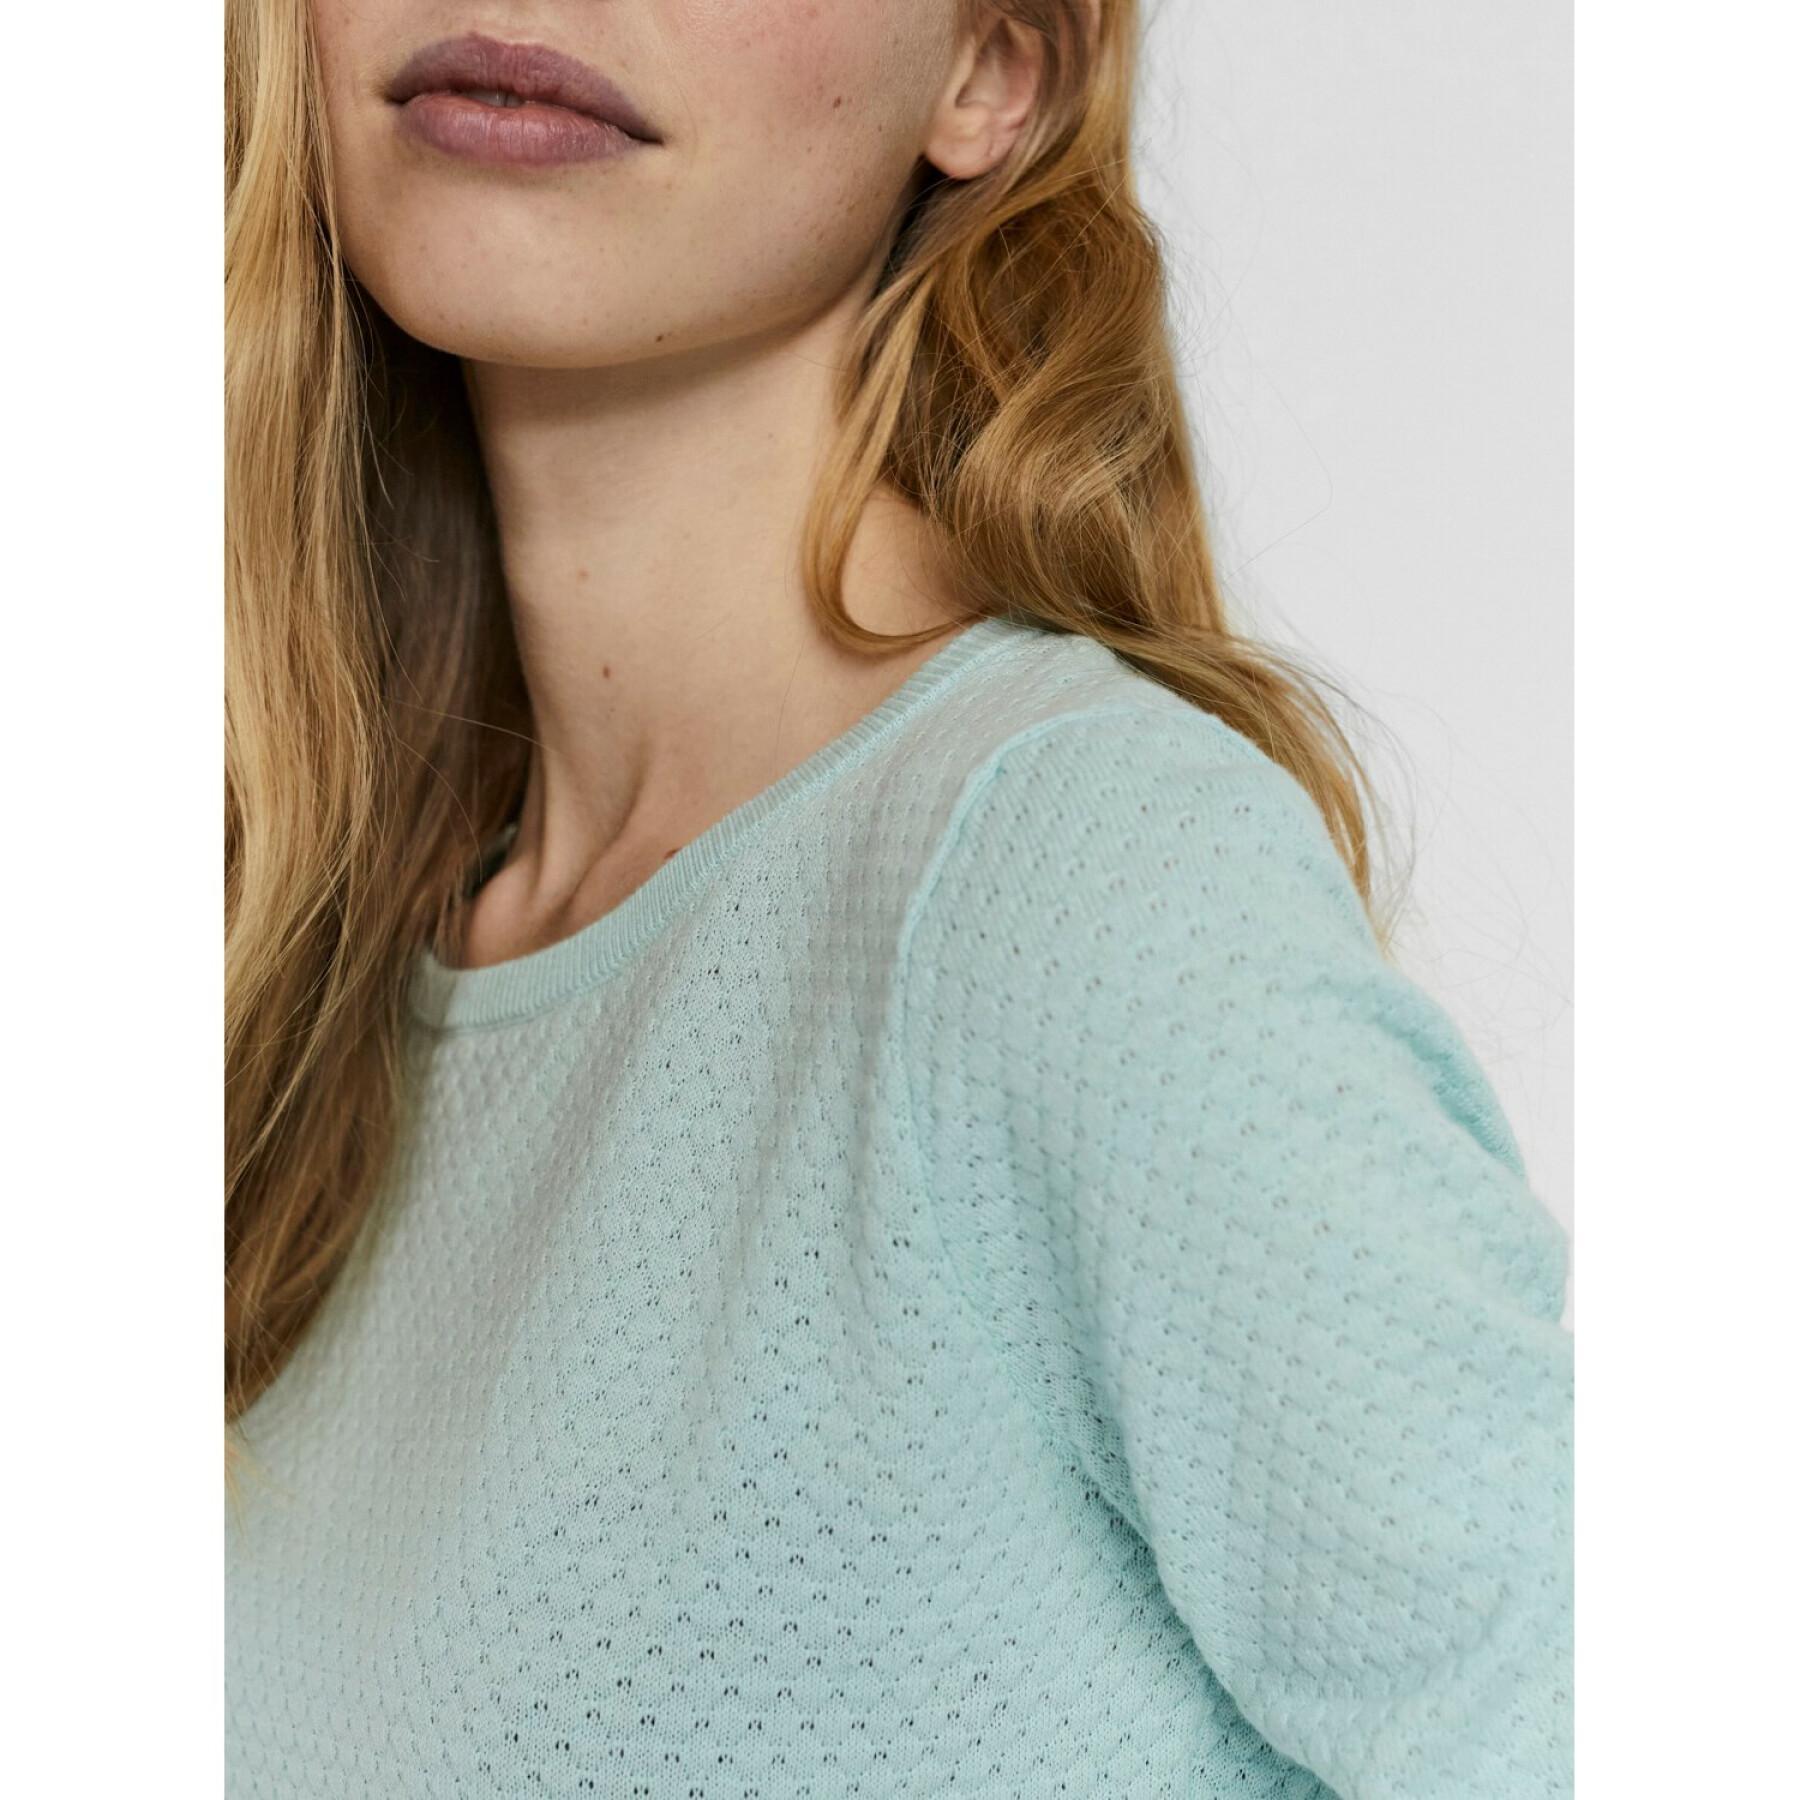 Suéter de mujer con cuello en O Vero Moda vmcare